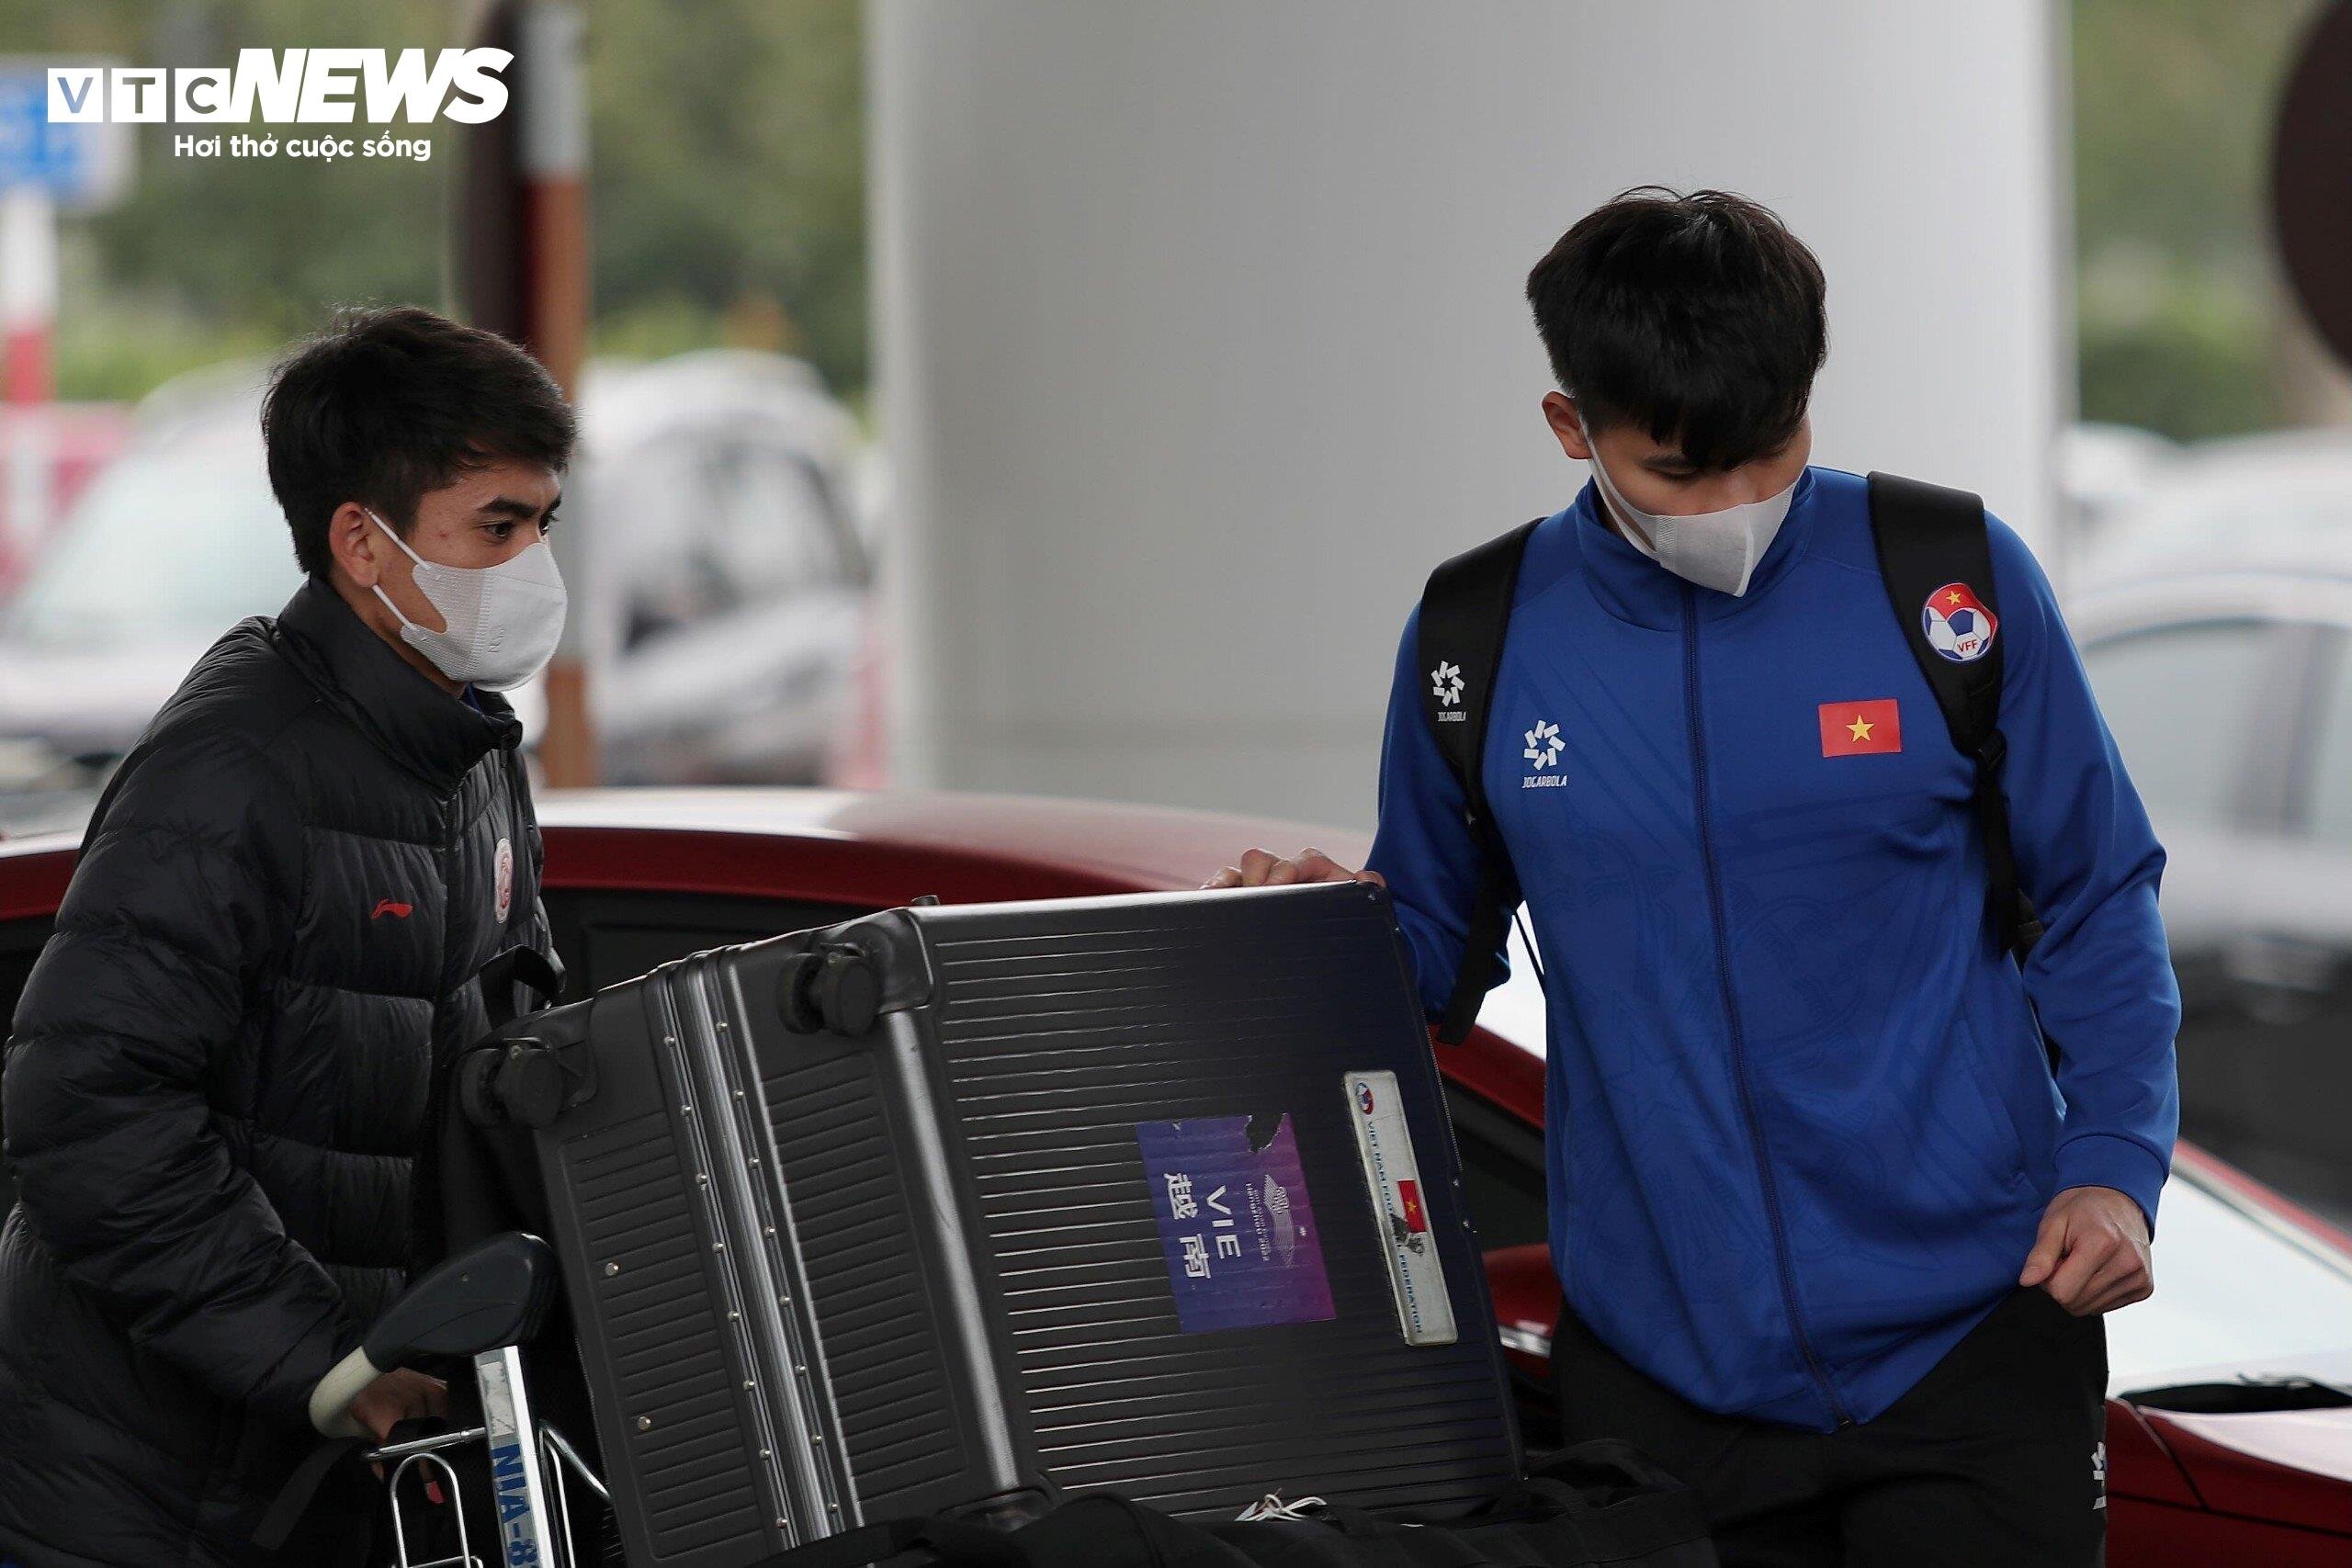 Khuất Văn Khang và Nguyễn Thanh Bình nhanh chóng xếp hành lý lên xe trở về. Hai cầu thủ để lại dấu ấn nhất định, nhưng chắc chắn nhận được bài học để cải thiện hơn trong tương lai.